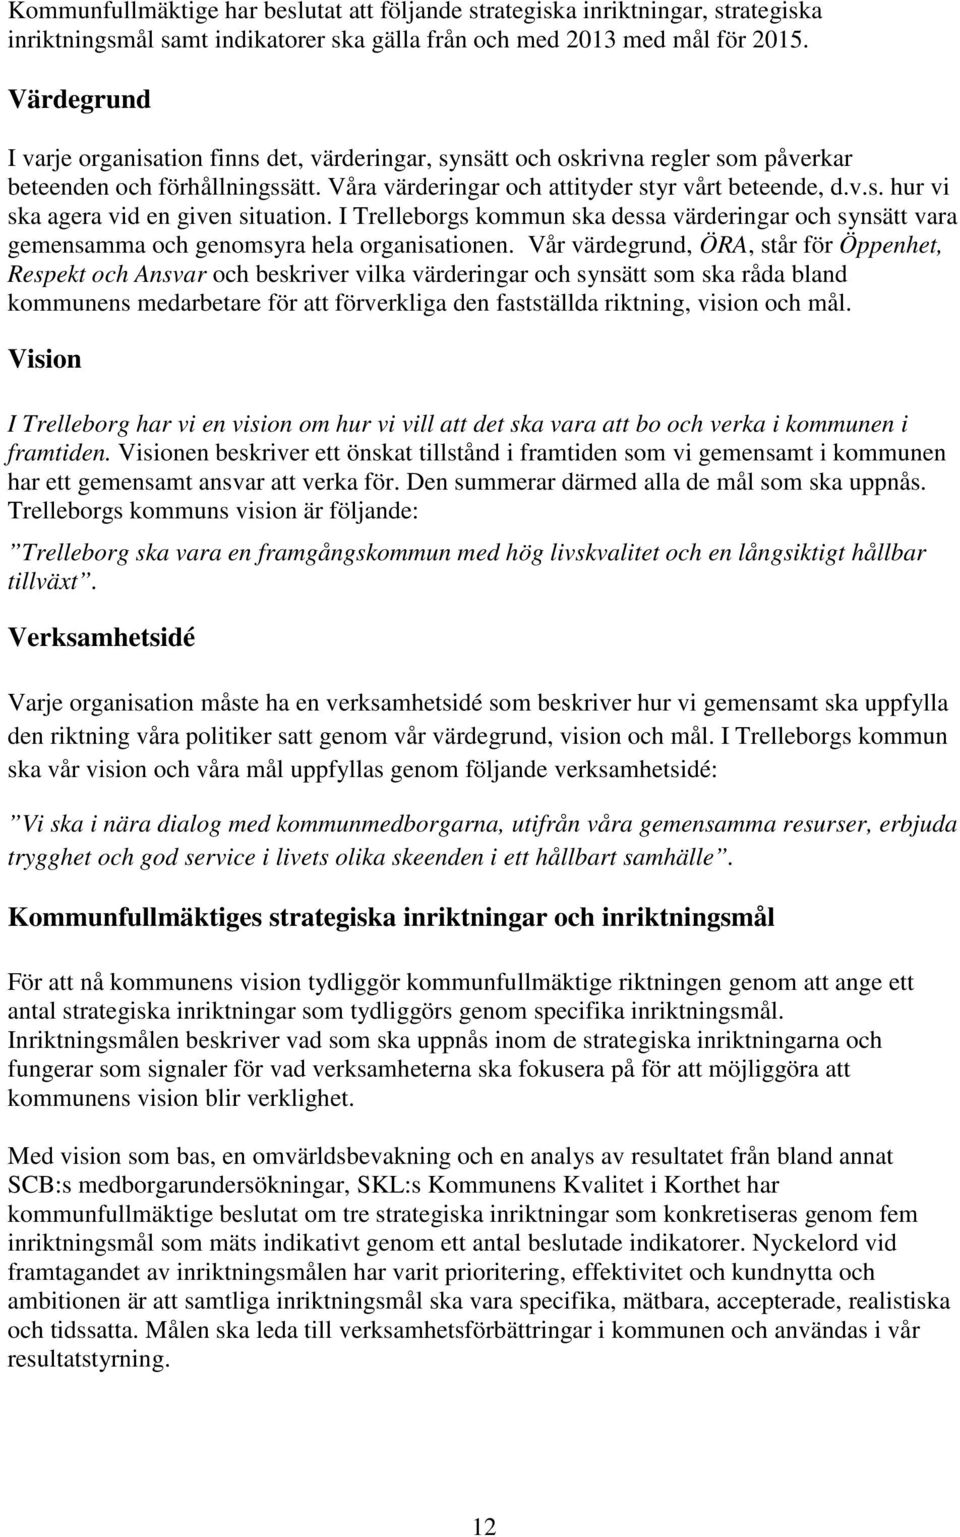 I Trelleborgs kommun ska dessa värderingar och synsätt vara gemensamma och genomsyra hela organisationen.